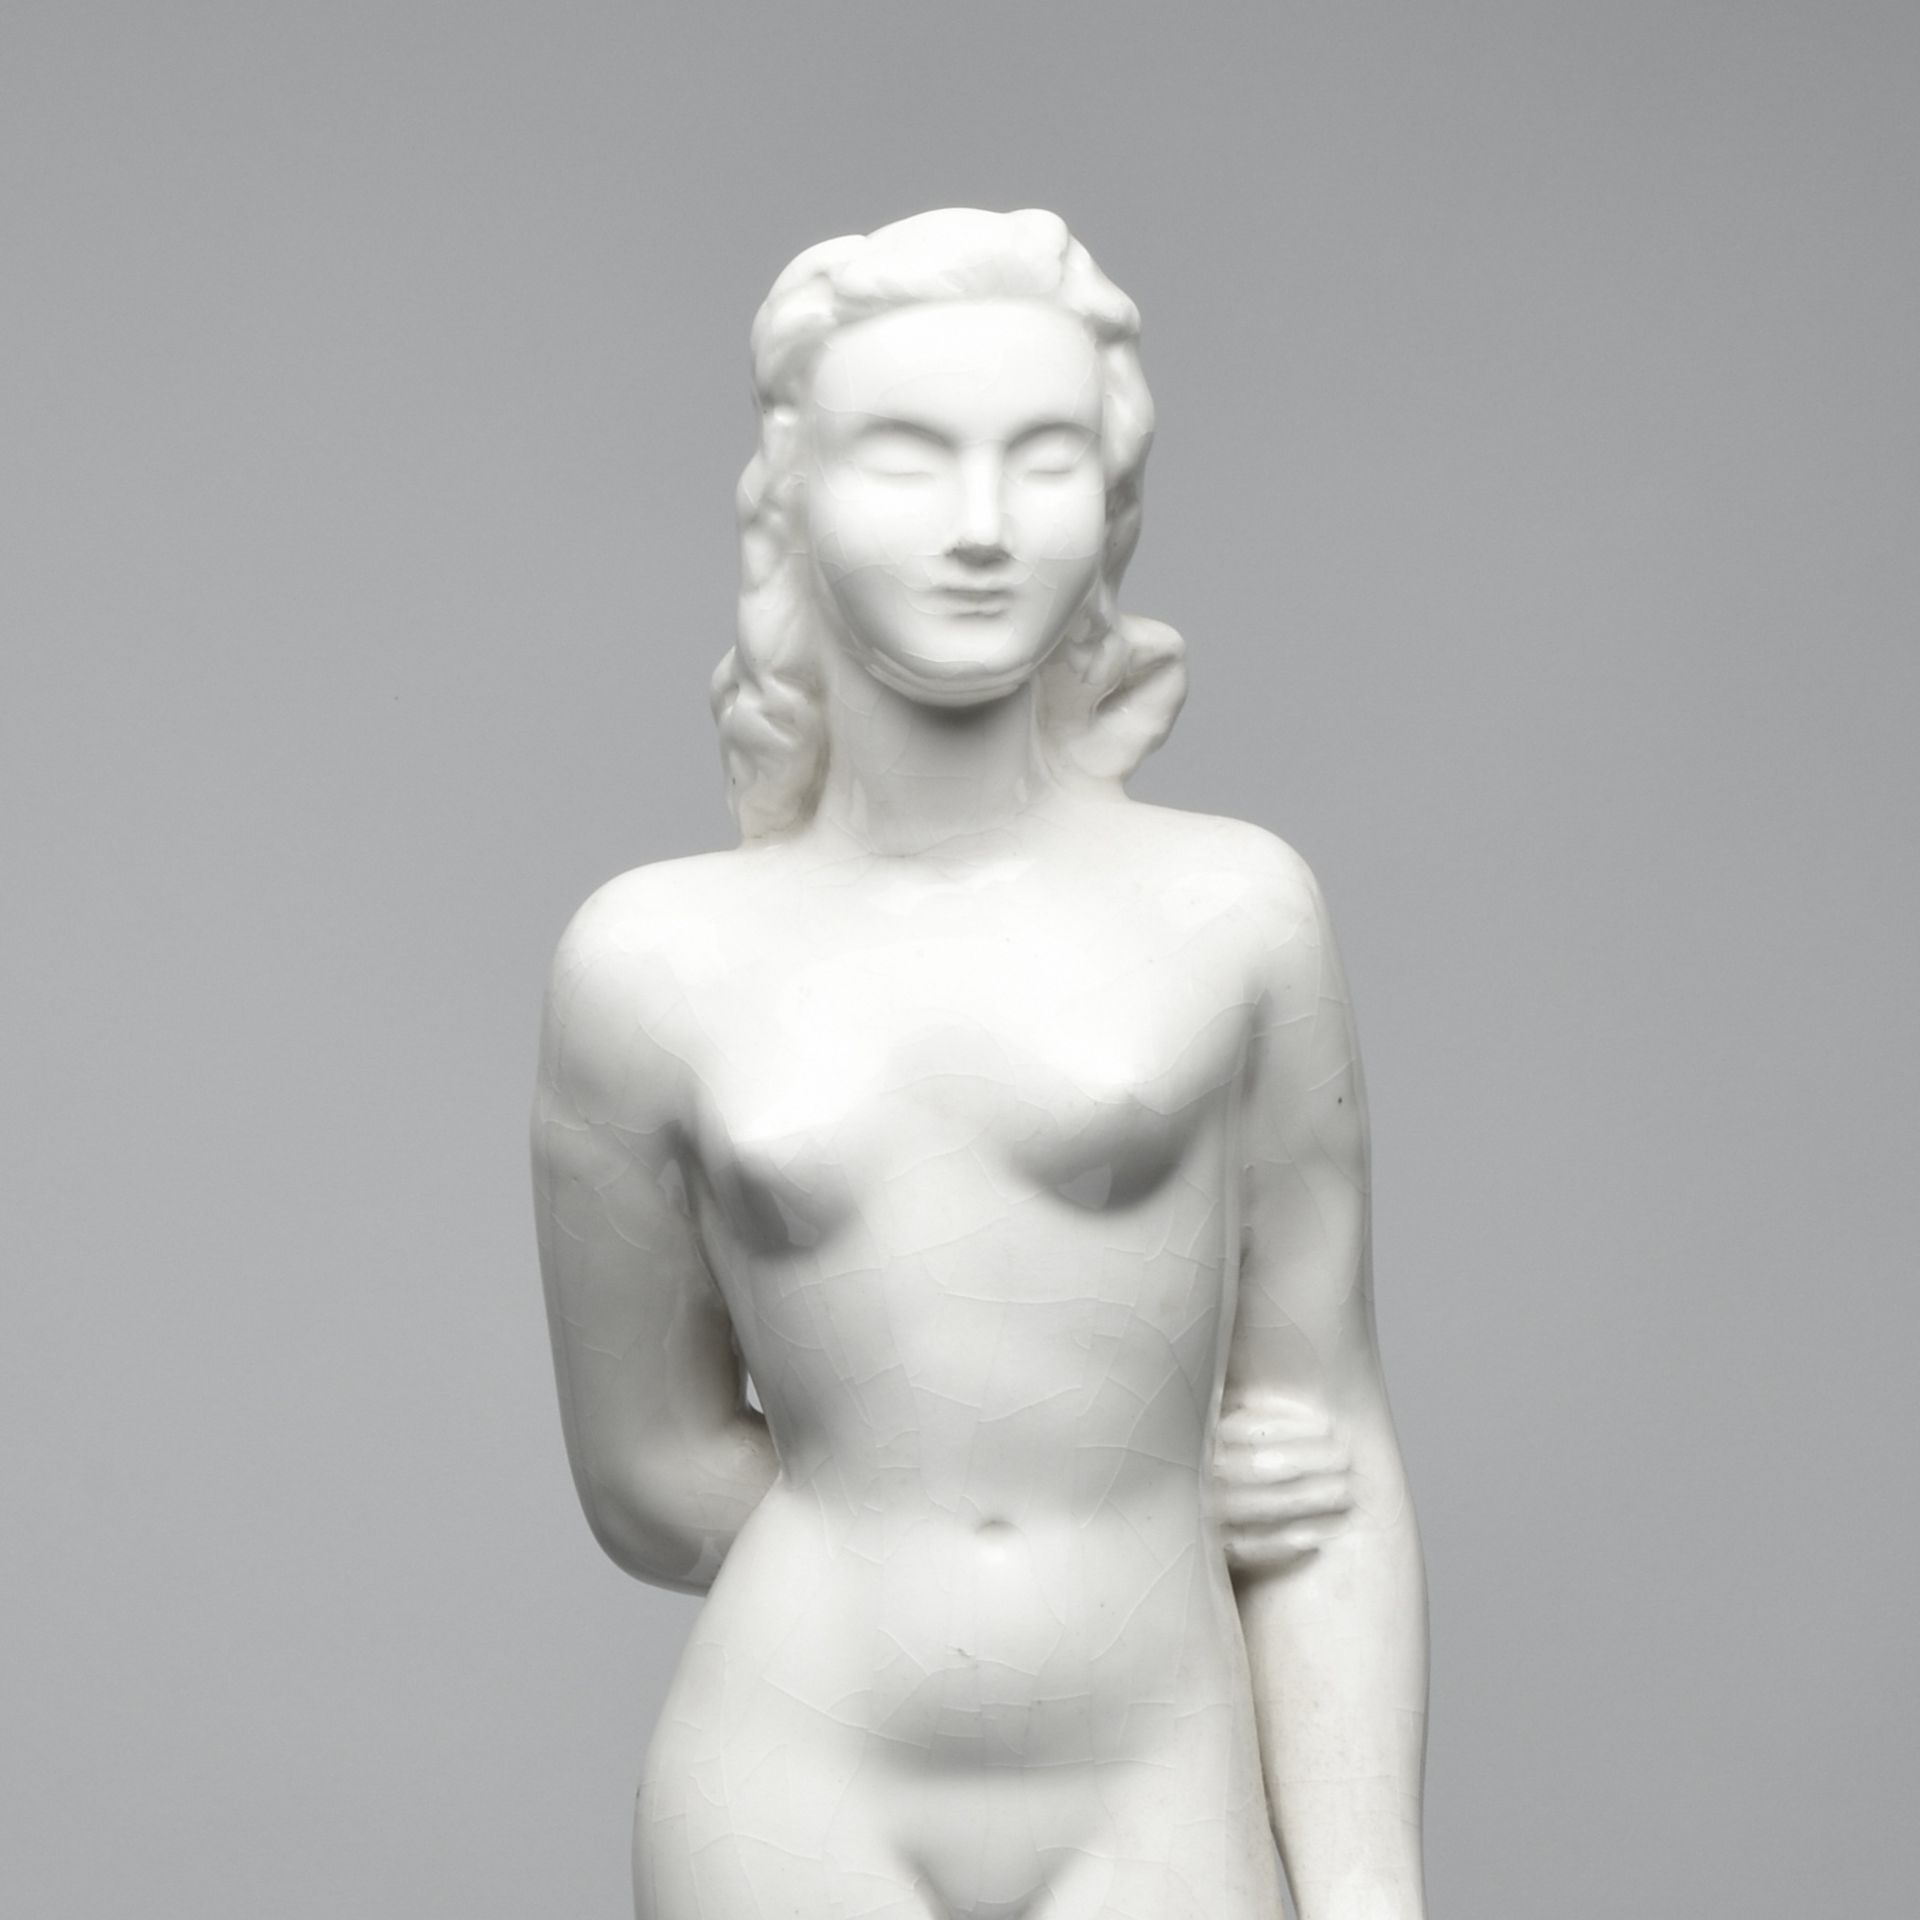 Weibliche Plastik Keramik, in Weiß glasiert, vollplastischer Damenakt als Standbild, in der linken